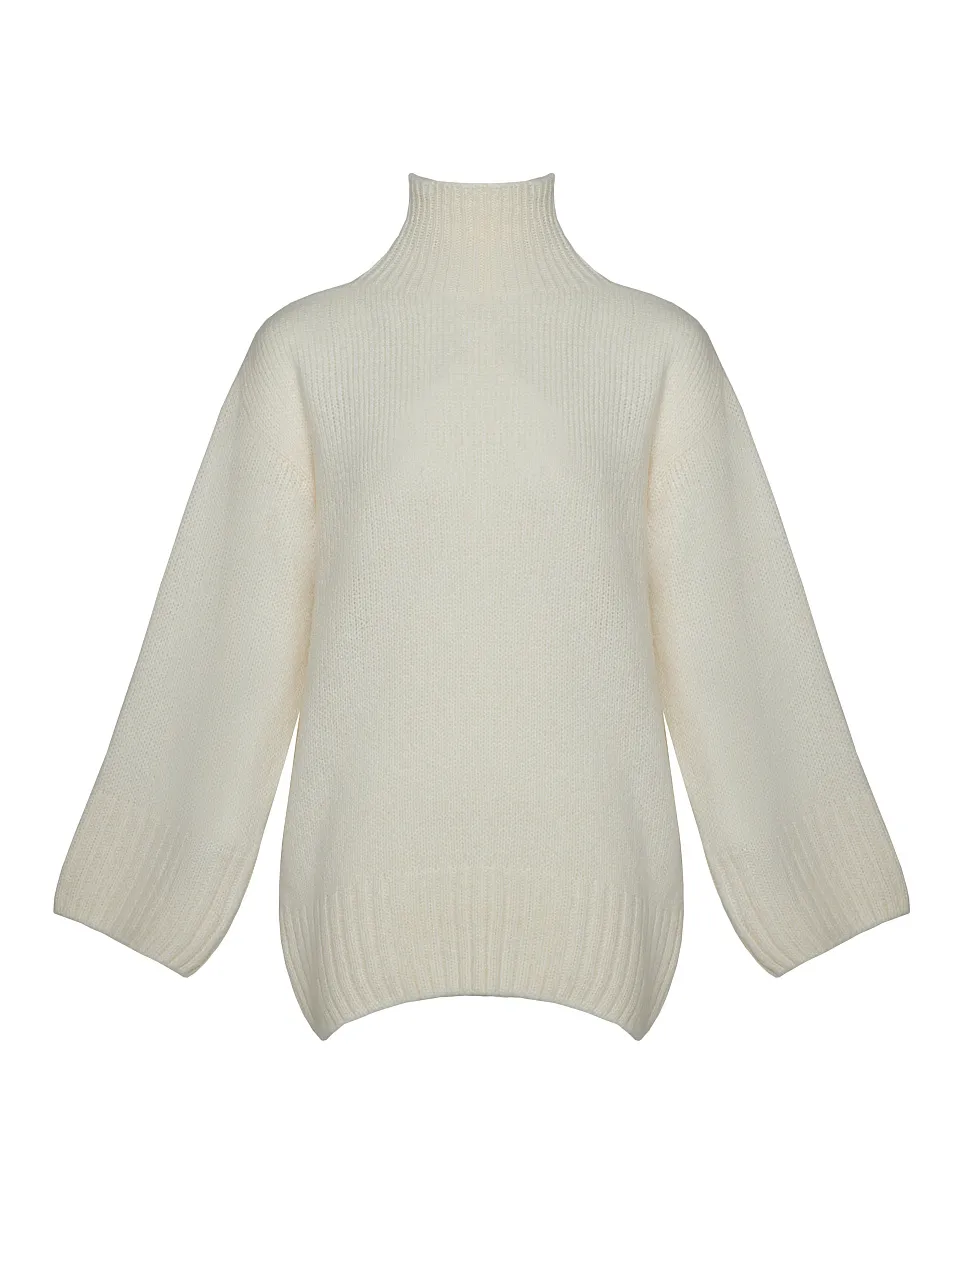 Женский свитер Stimma Анилия, цвет - светло-молочный